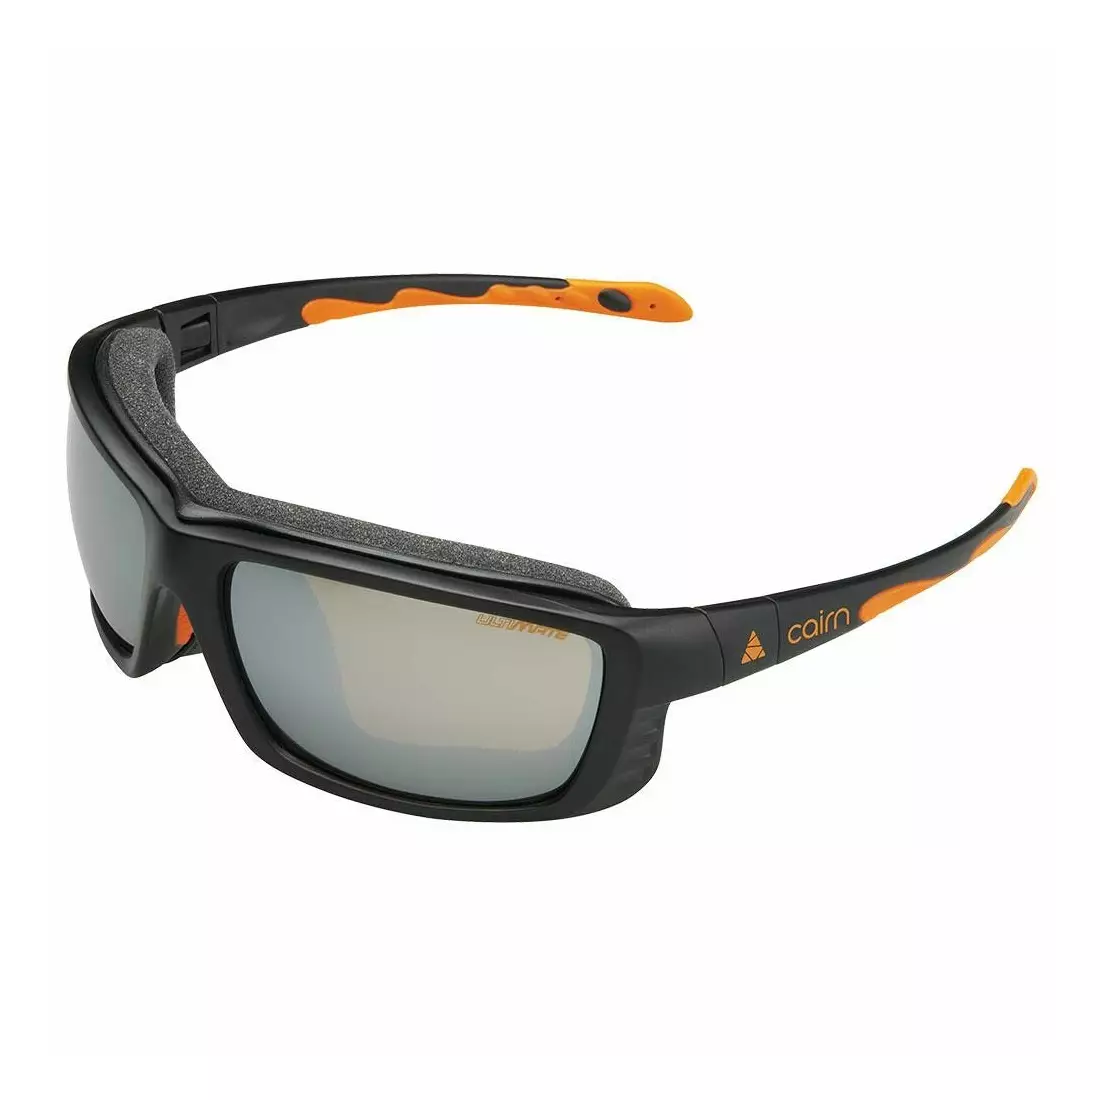 CAIRN Sportovní fotochromatické brýle IRON PHOTOCHR black/orange XPIRON02